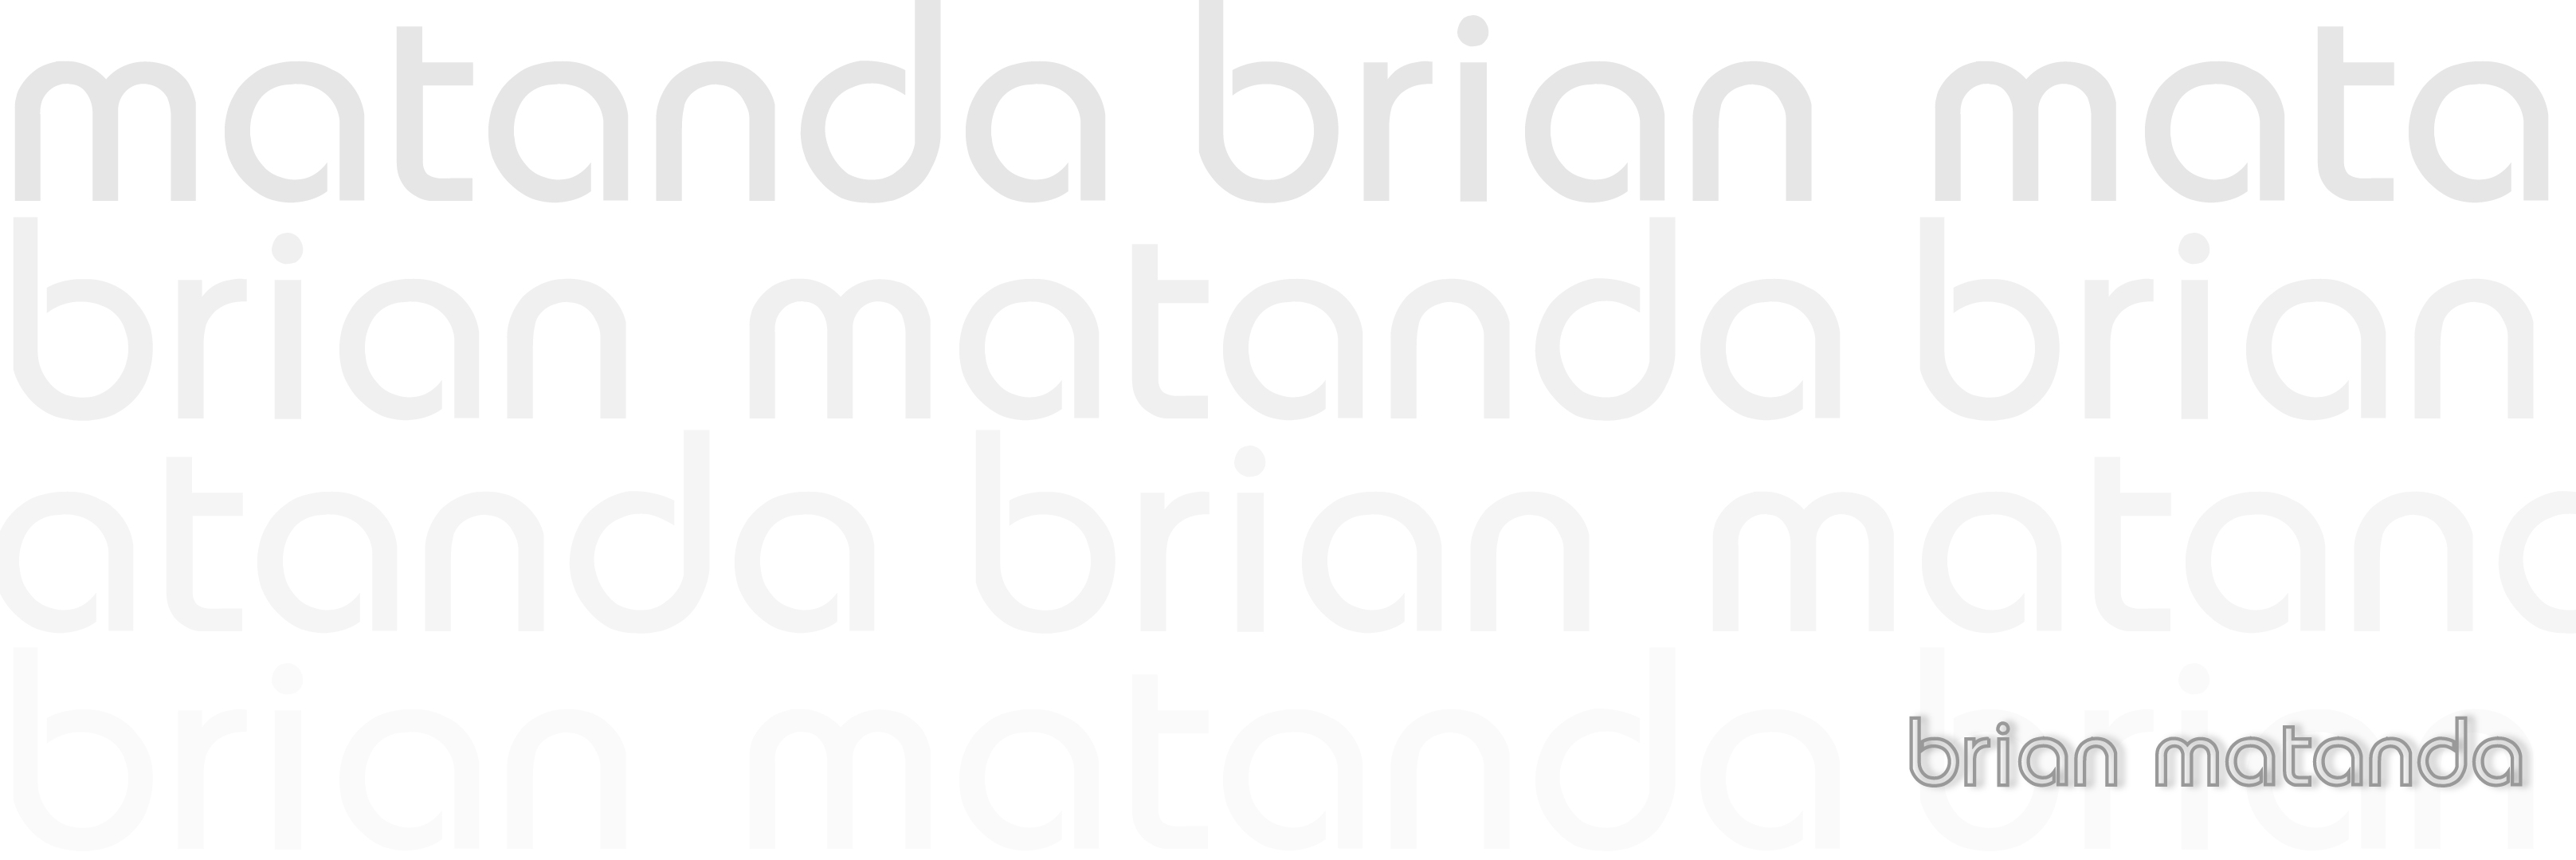 Brian Matanda